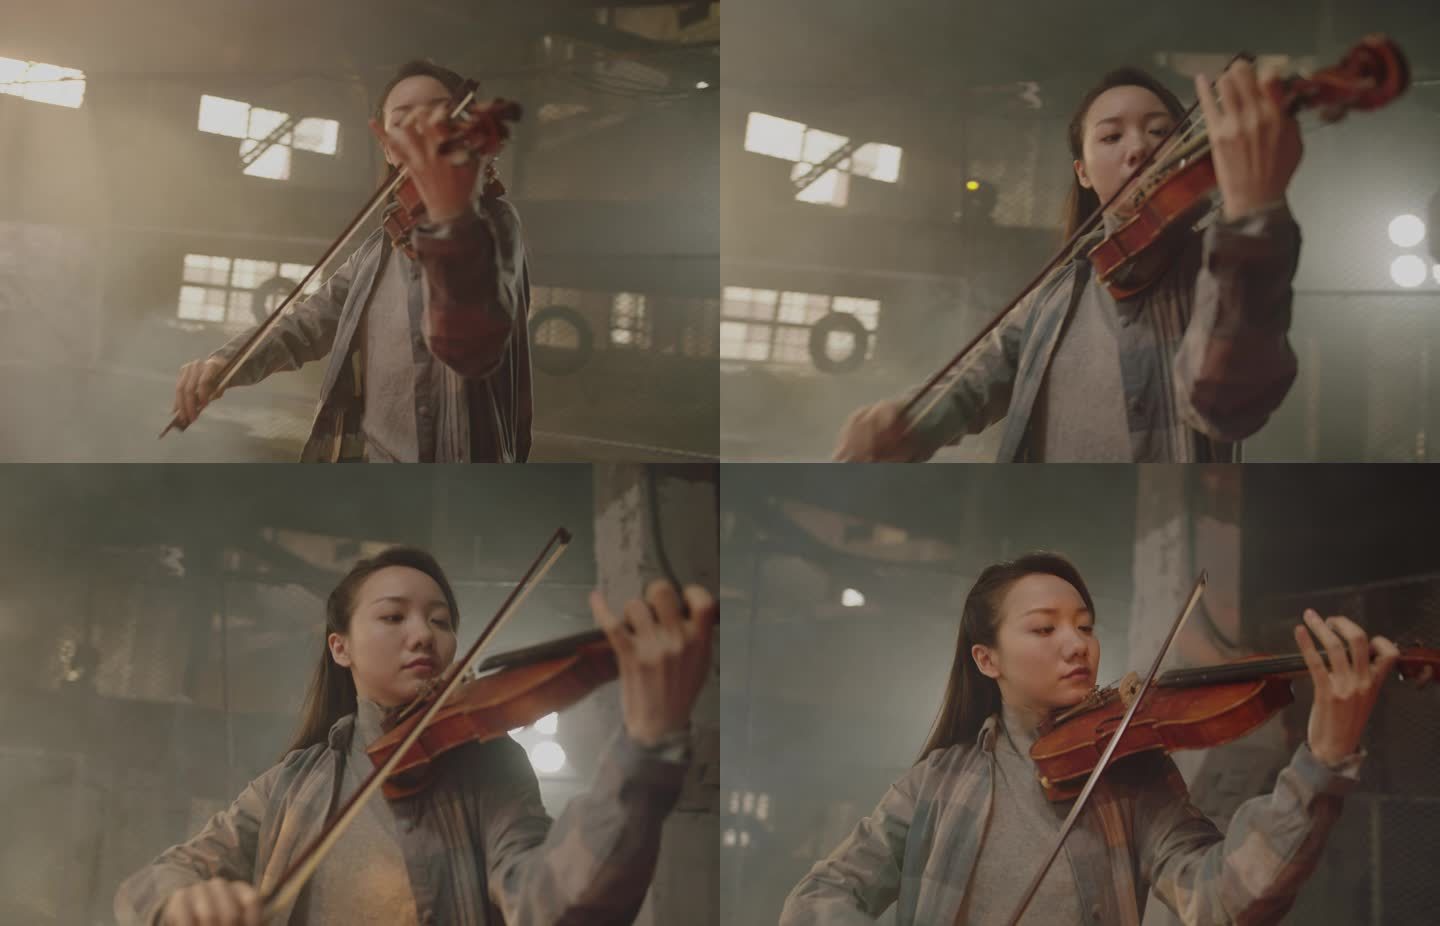 女子拉小提琴